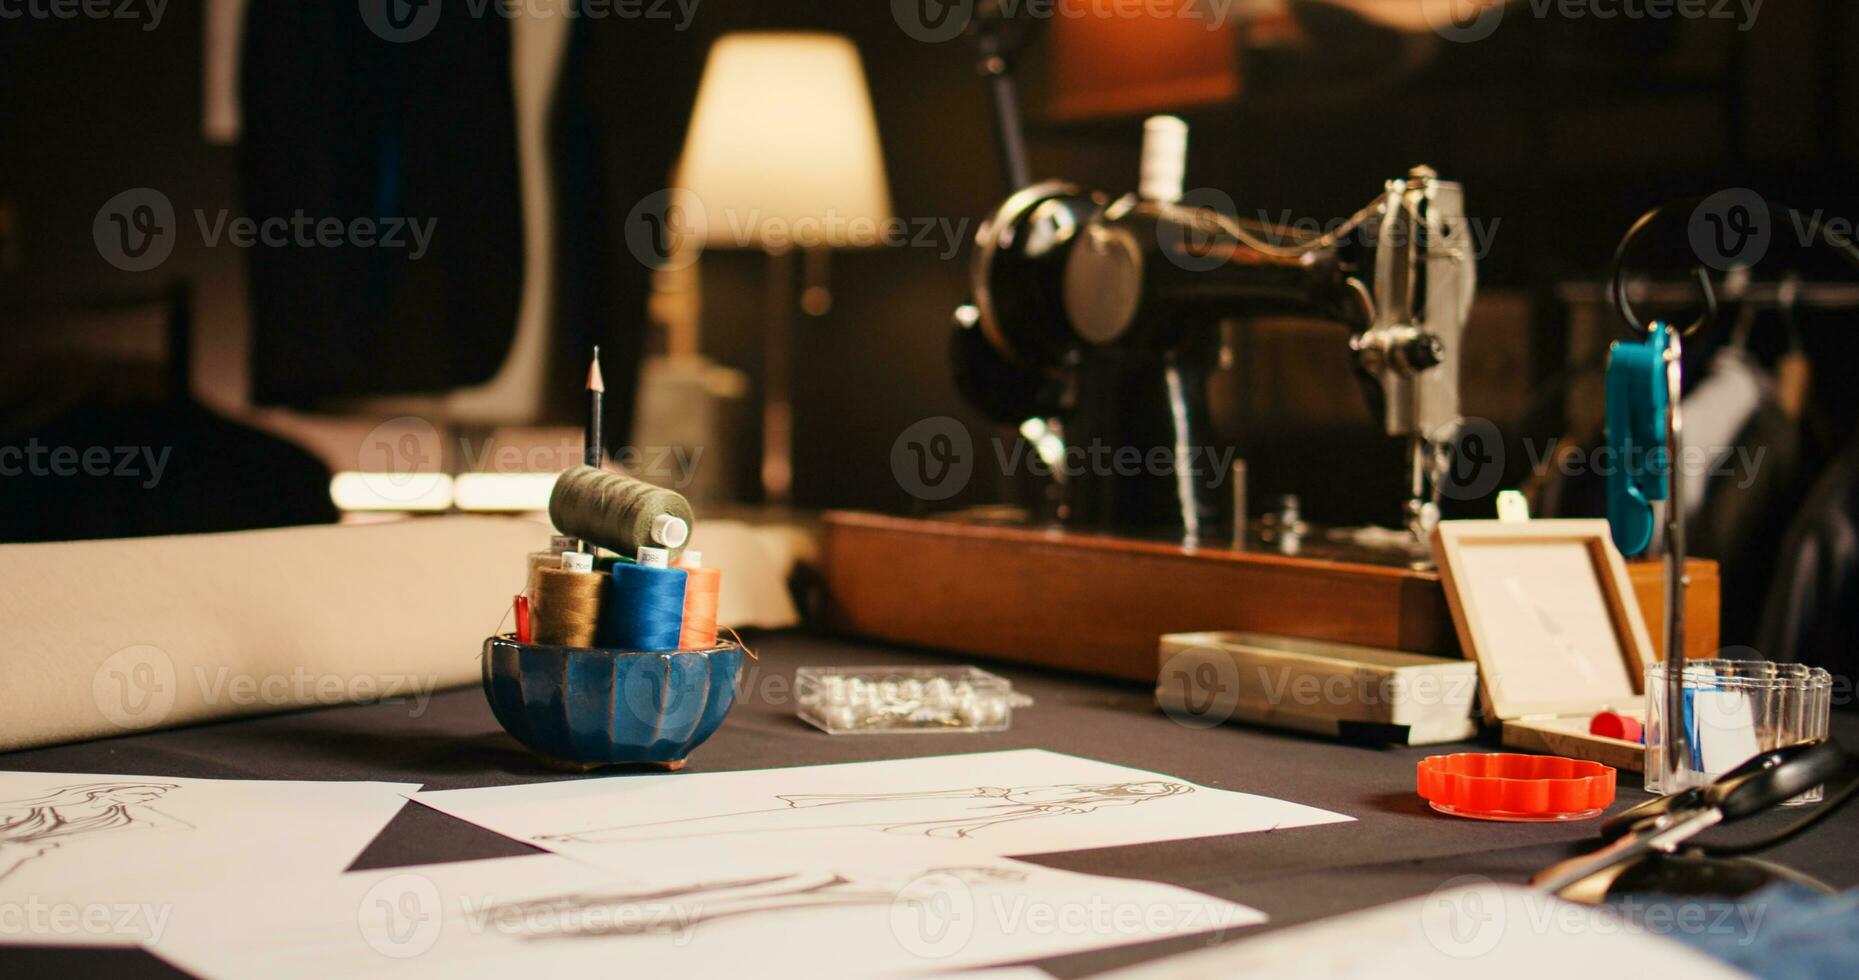 atelier med mode skisser och verktyg, sömnad maskiner och Kläder mönster Begagnade till skapa beställnings- tillverkad Produkter på skräddare arbetsstation. tömma verkstad med material för hantverk. foto